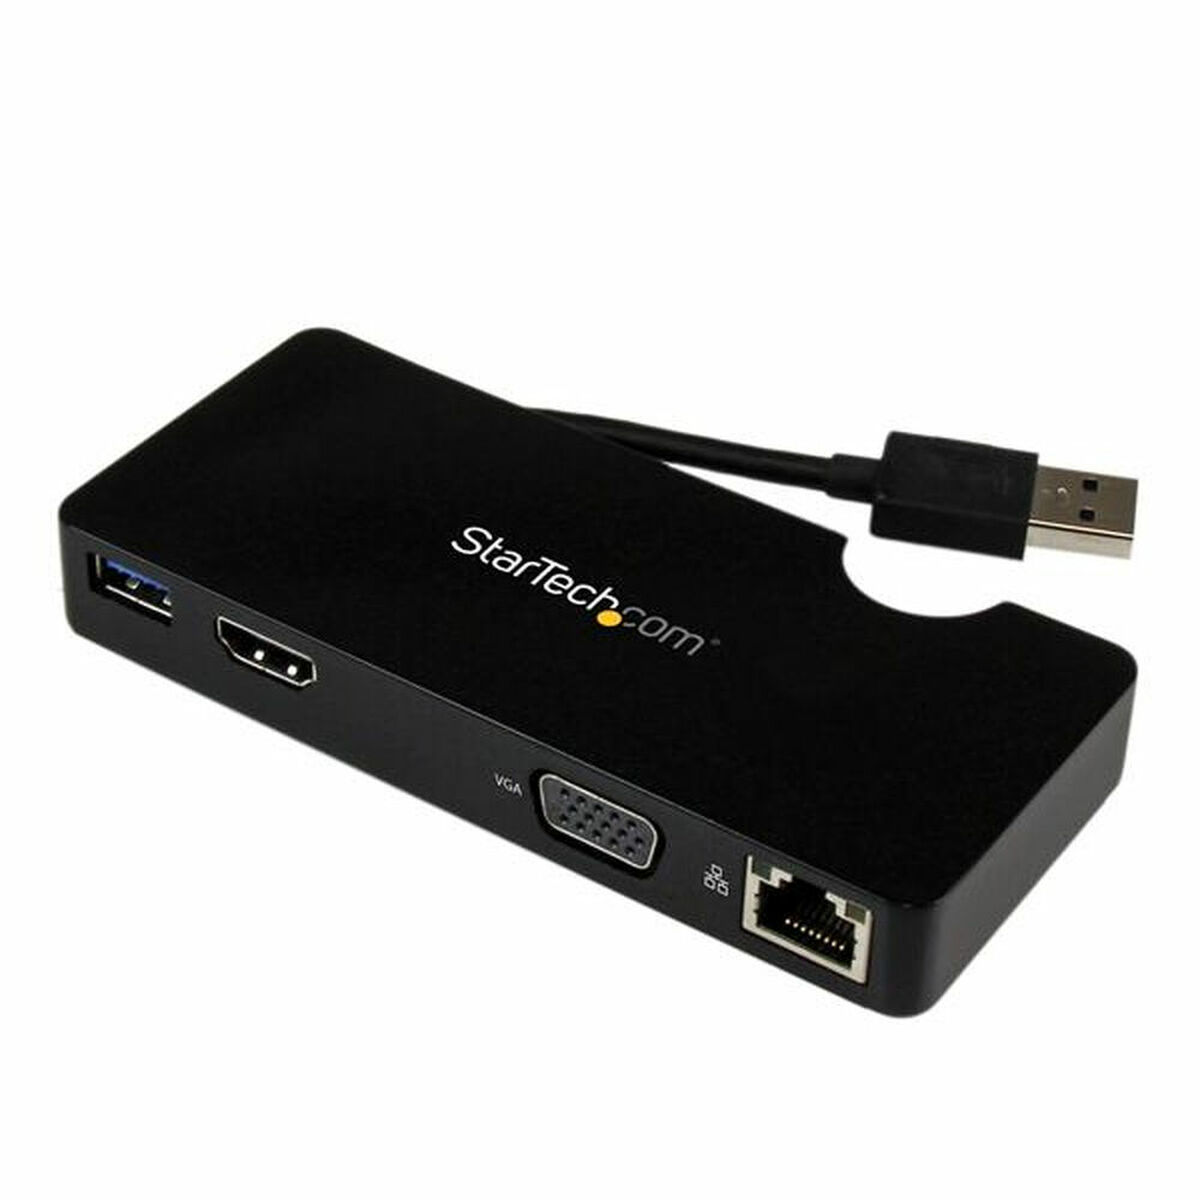 Tuntitarjouksena verkkokaupassamme Korhone: Tietokoneet & Elektroniikka on USB-keskitin Startech USB3SMDOCKHV